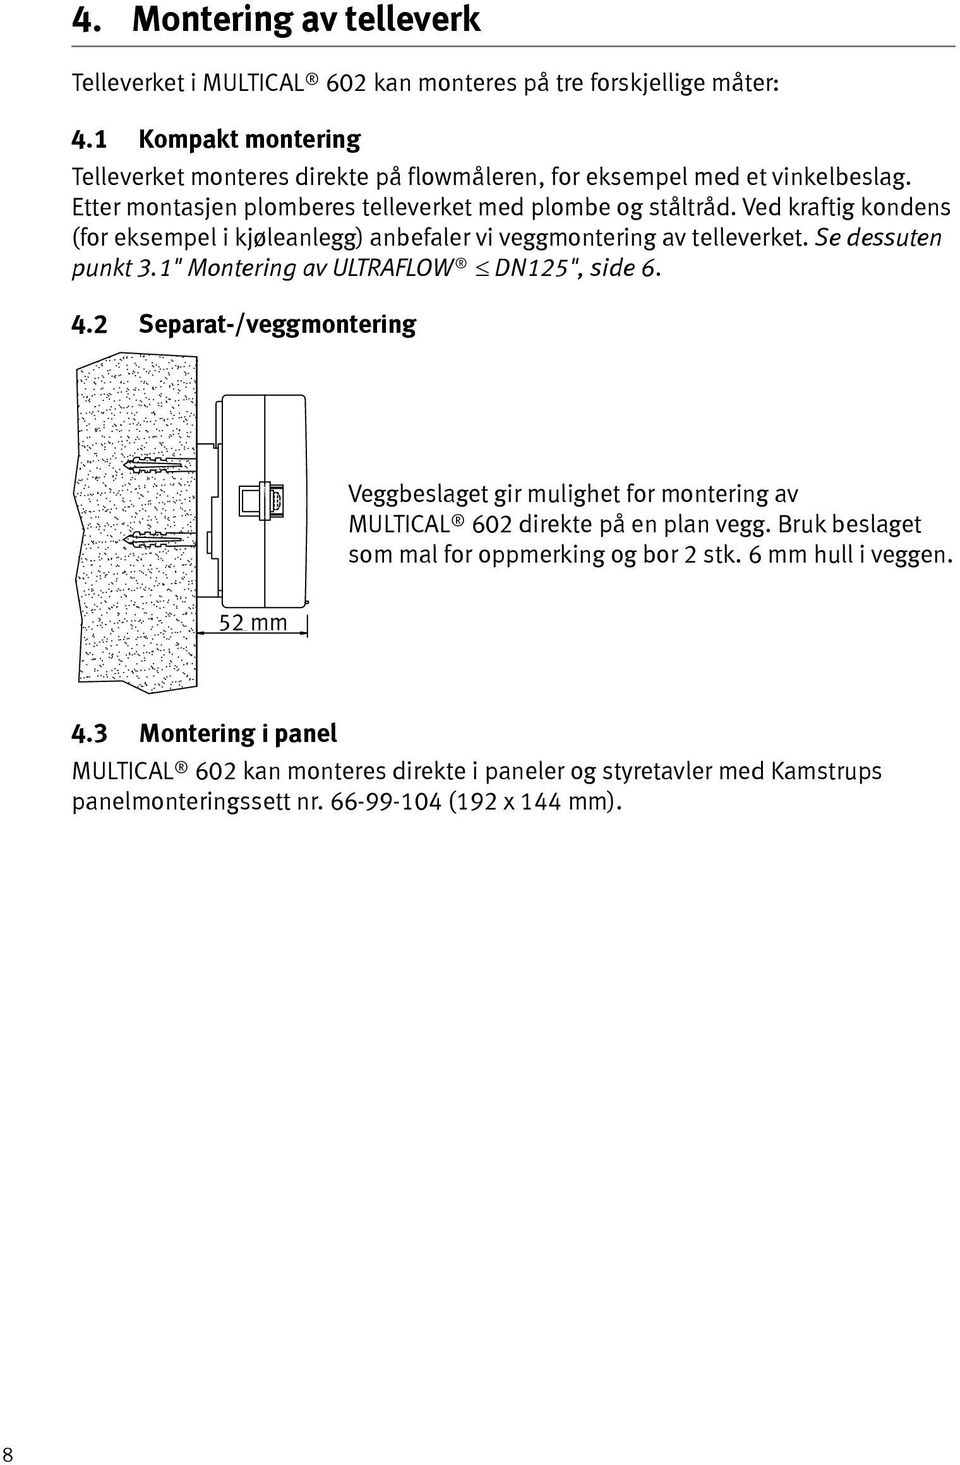 Ved kraftig kondens (for eksempel i kjøleanlegg) anbefaler vi veggmontering av telleverket. Se dessuten punkt 3.1" Montering av ULTRAFLOW DN125", side 6. 4.